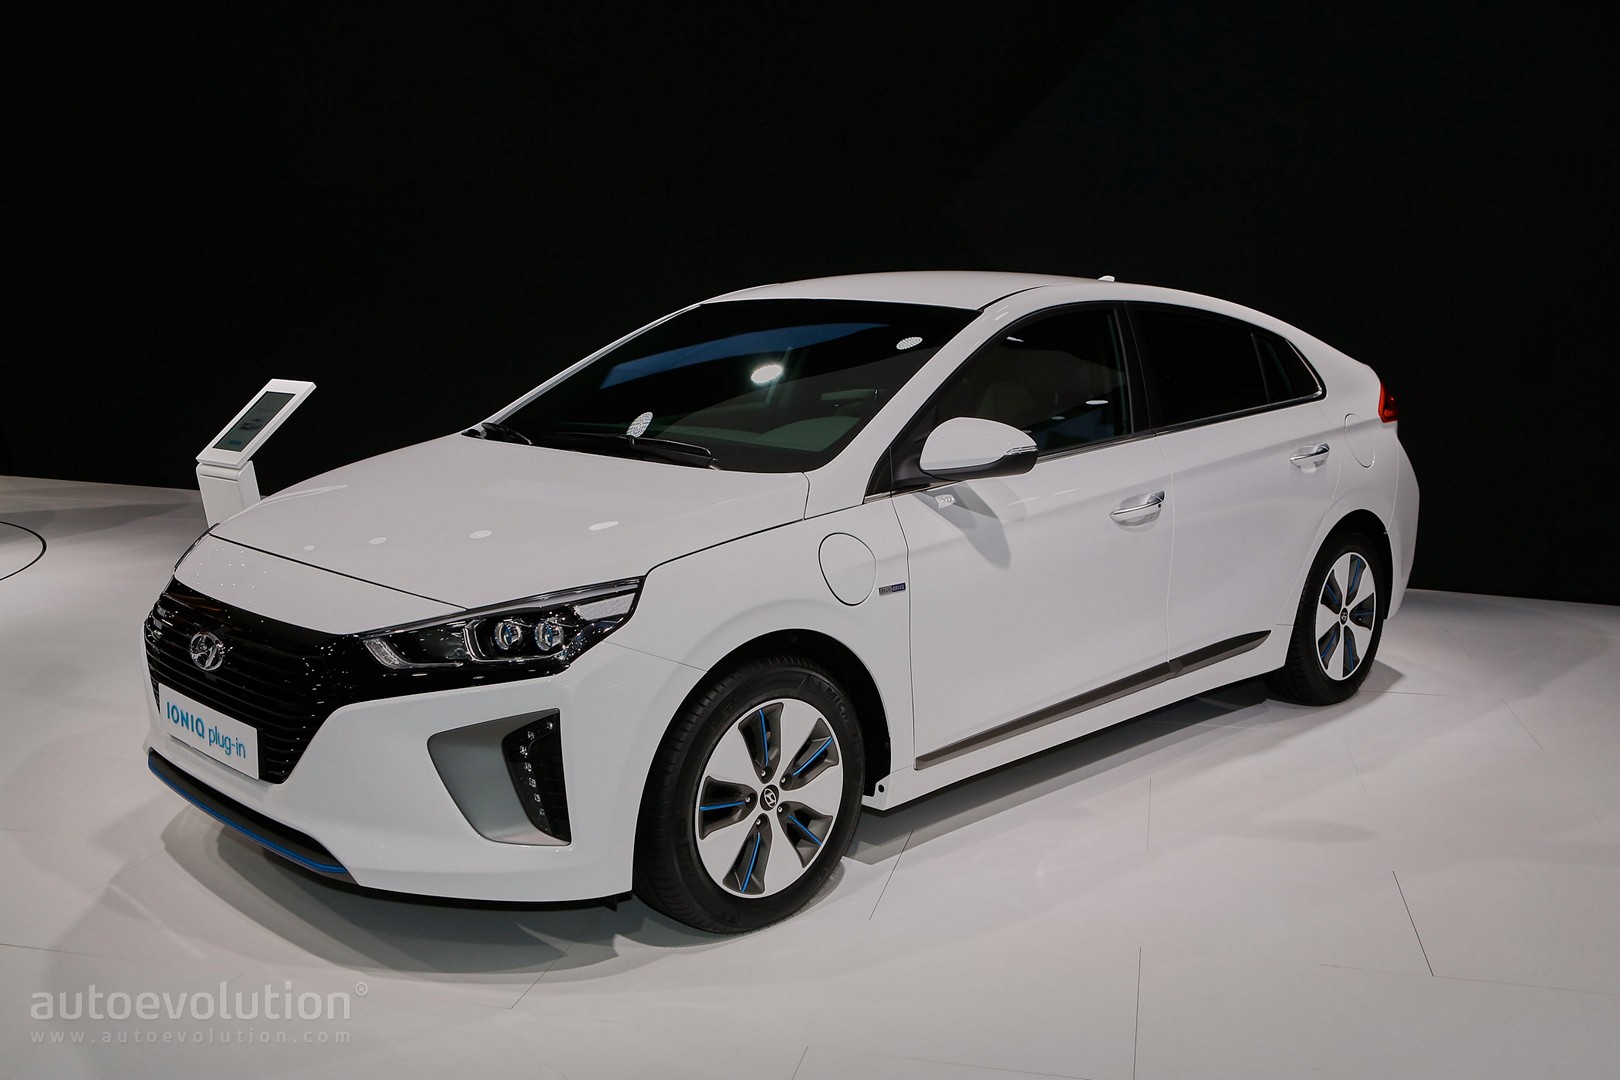 Hyundai Ioniq Hybrid, and Electric Debut - autoevolution